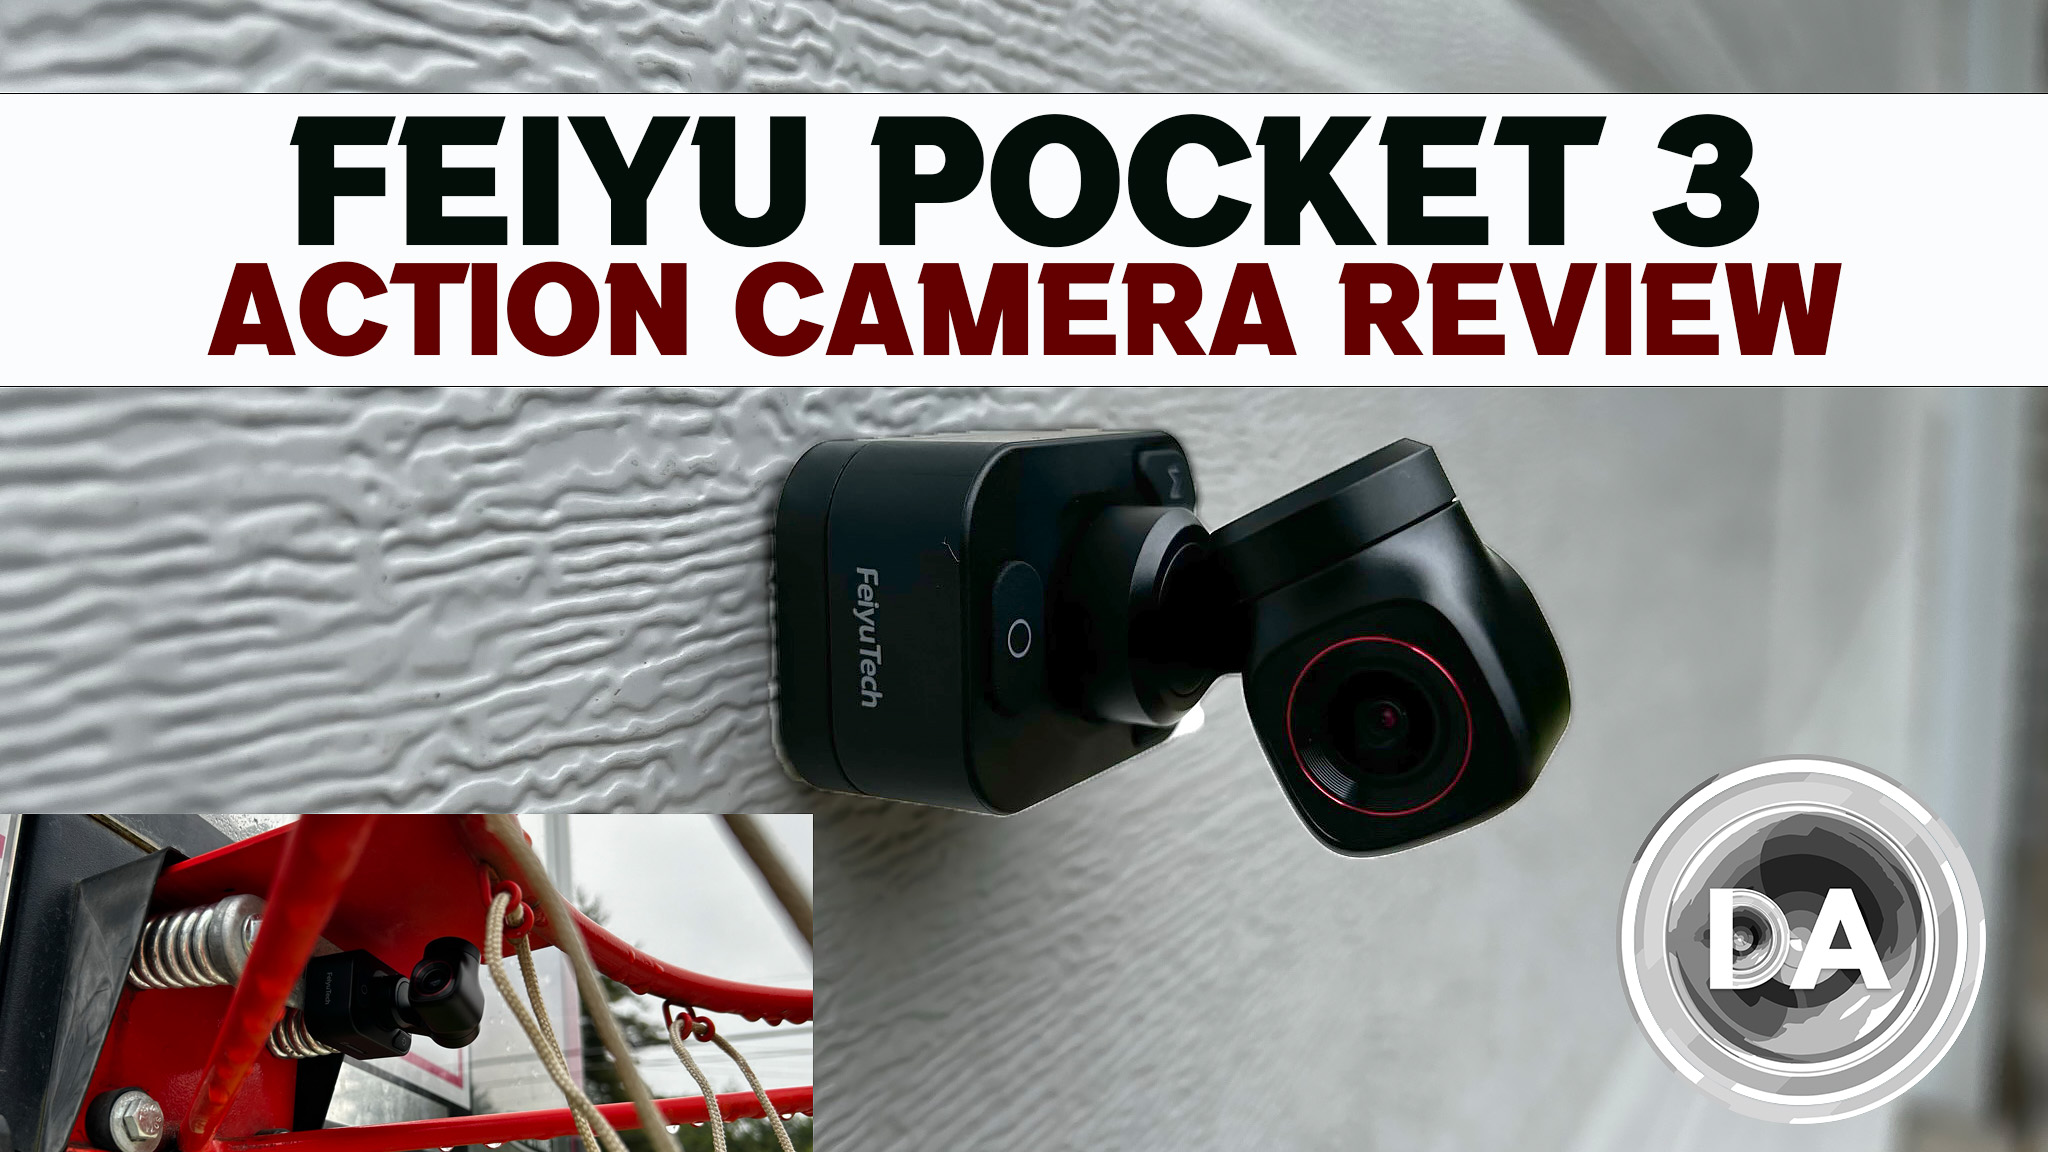 Feiyu Pocket 3 Action Camera Review 